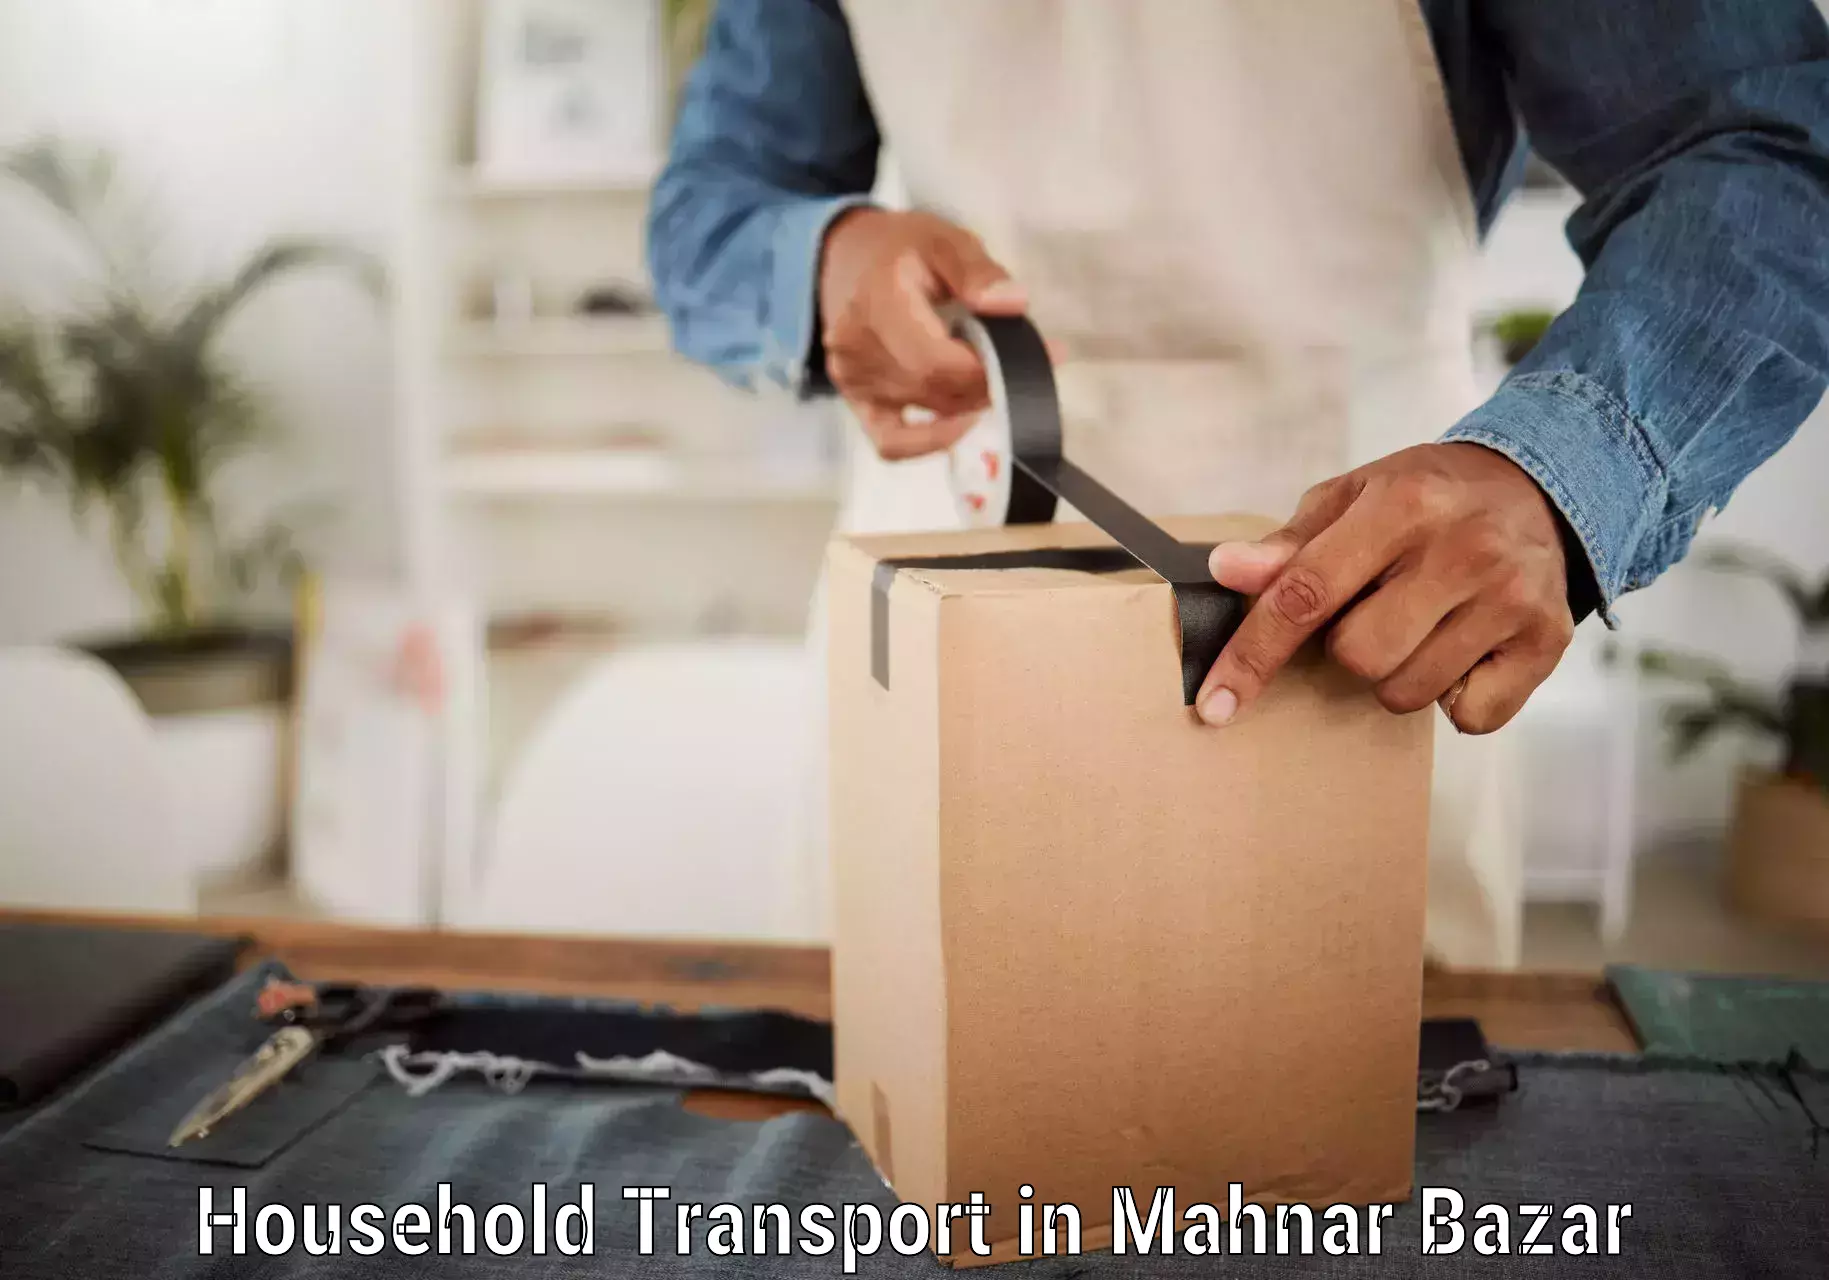 Household transport solutions in Mahnar Bazar